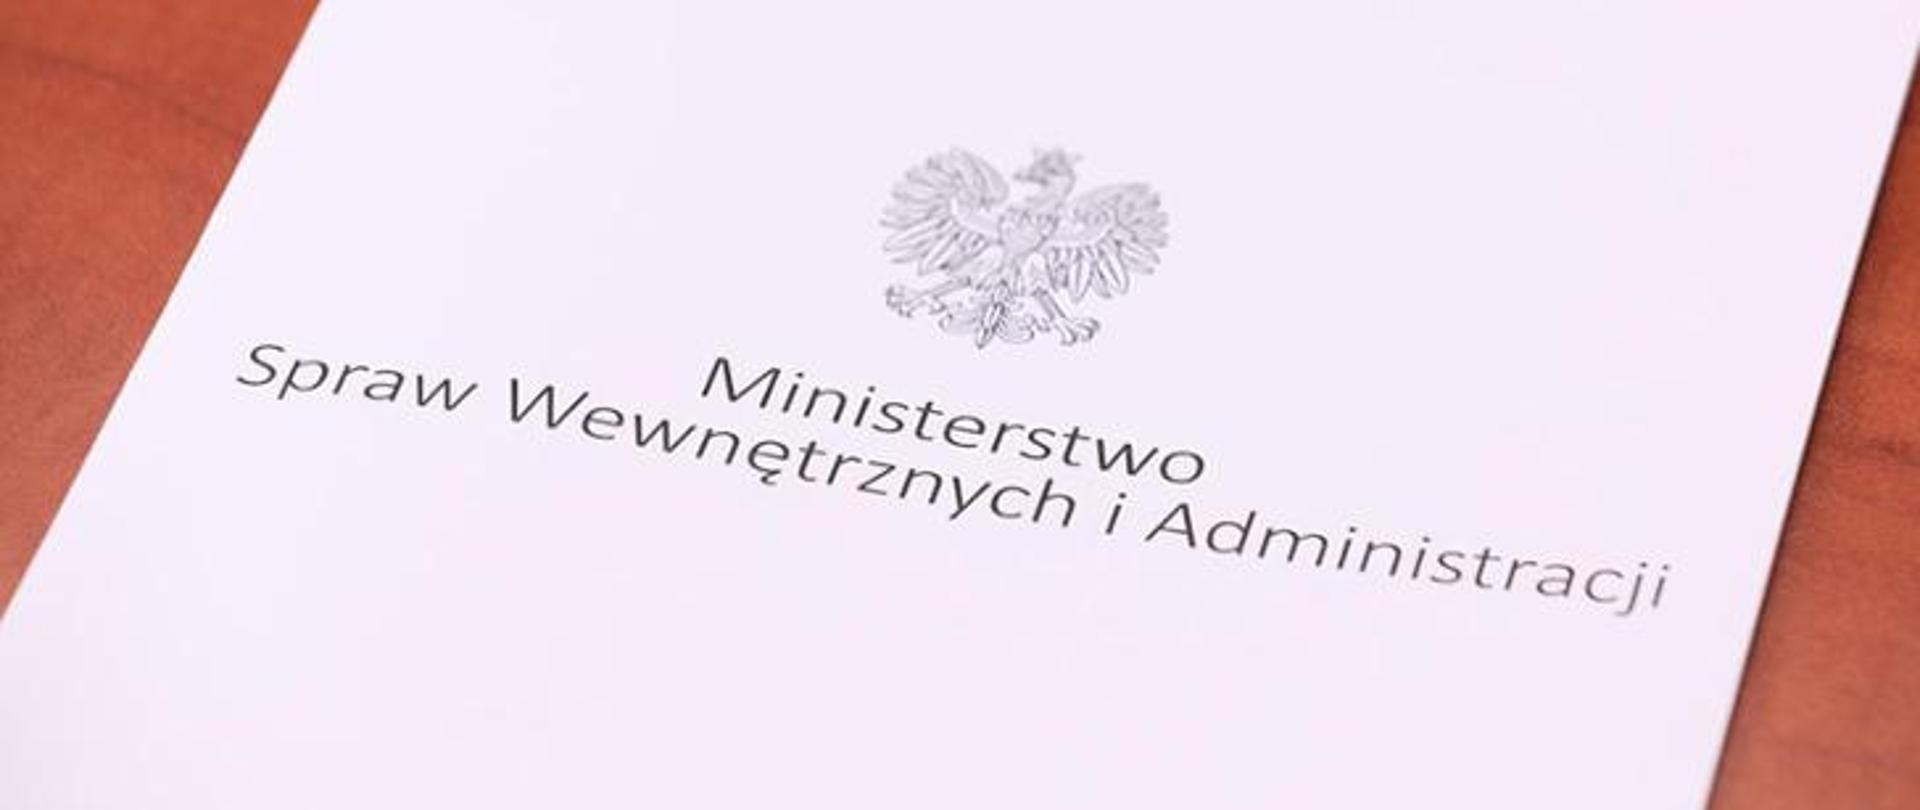 Zdjęcie przedstawia białą teczkę z napisem Ministerstwo Spraw Wewnętrznych i Administracji